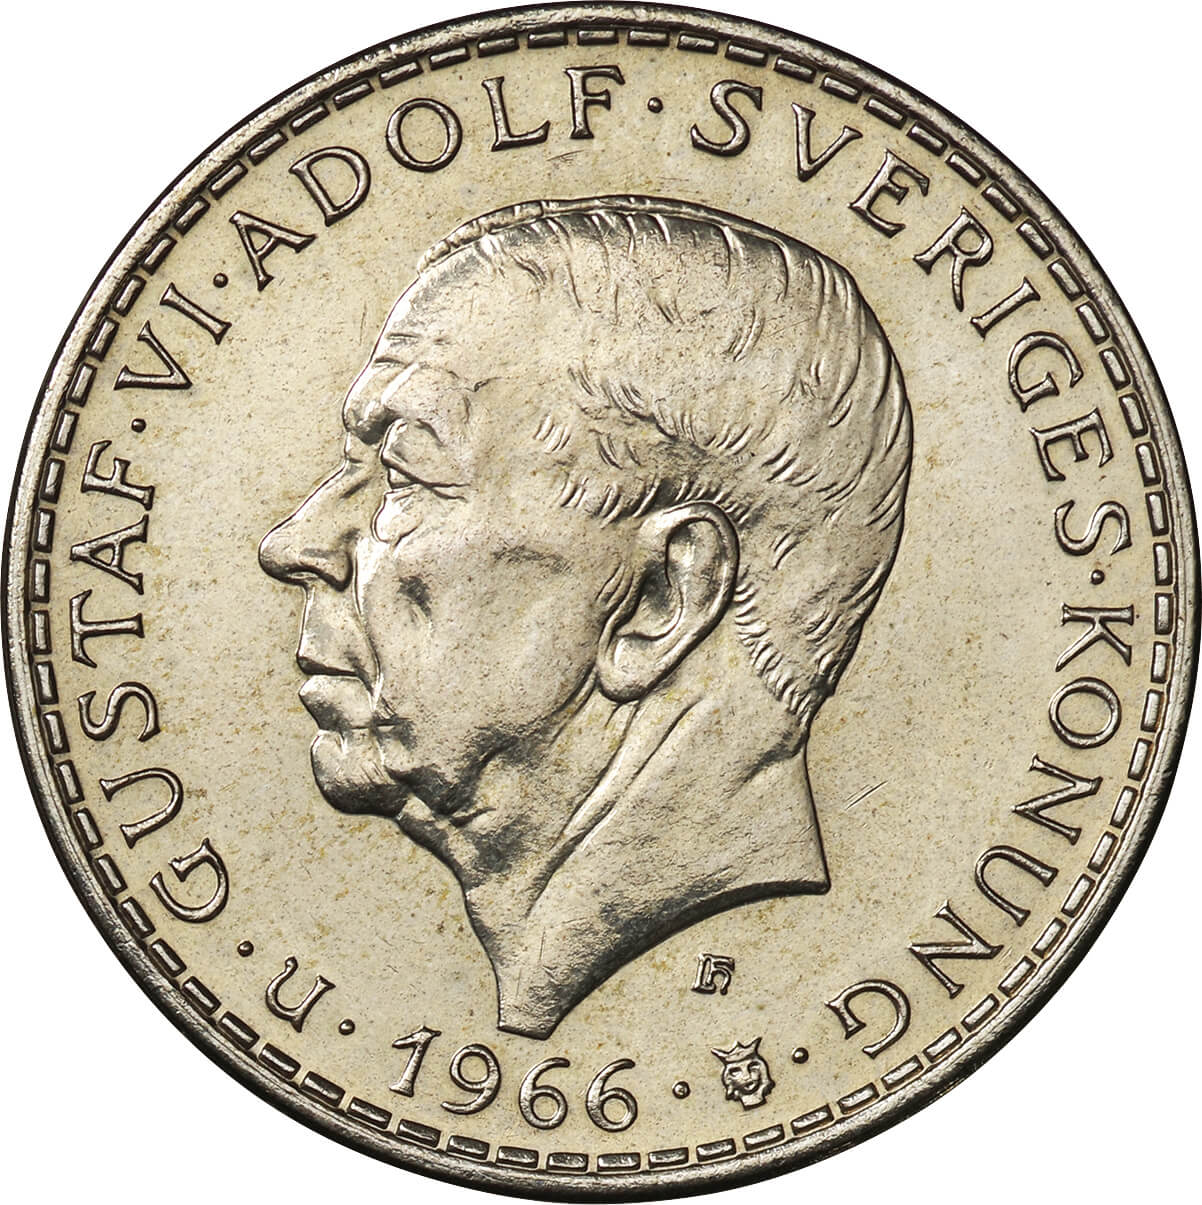 1972年 スウェーデン「王の署名」の銀貨 スウェーデン王 グスタフ6世 